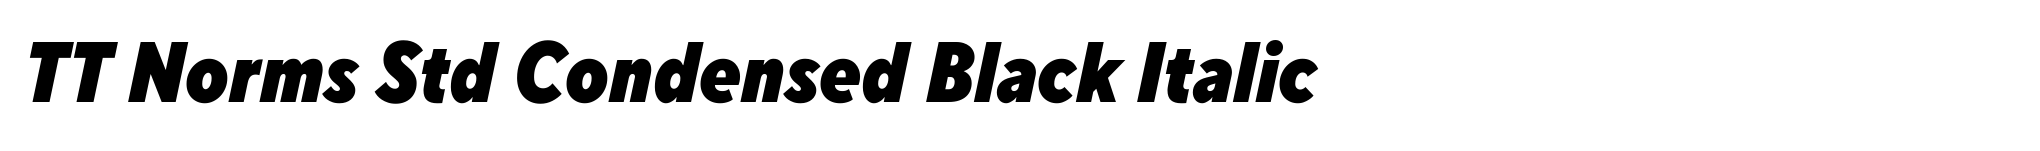 TT Norms Std Condensed Black Italic image